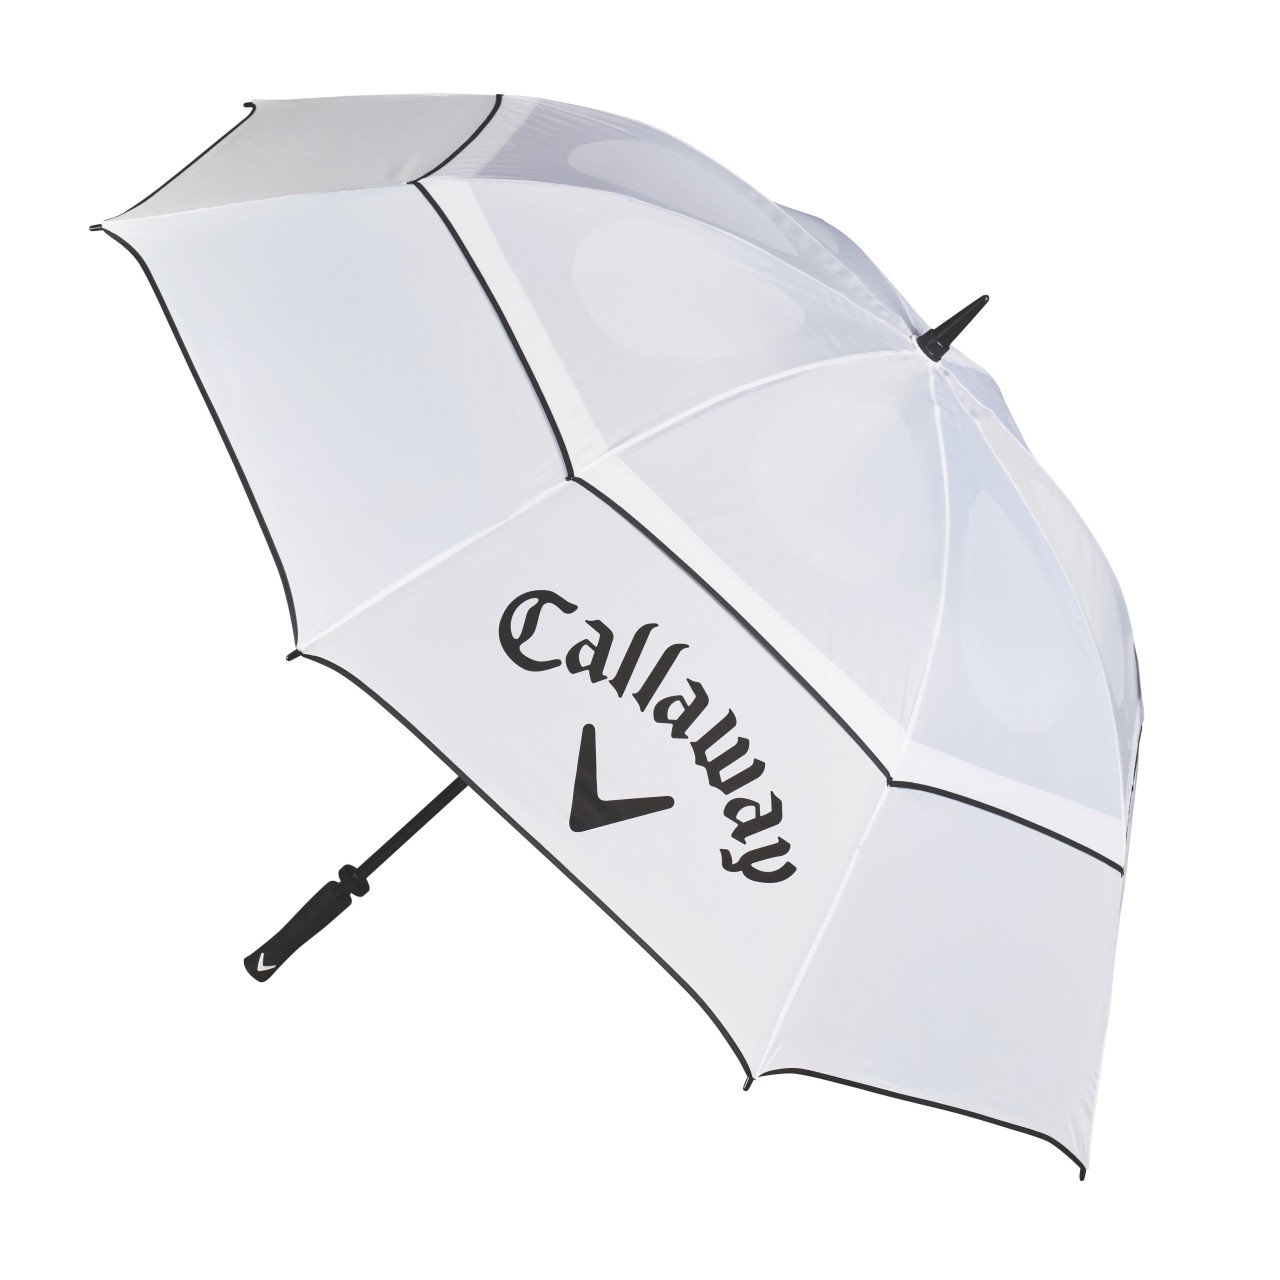 Callaway Shield 64 Regenschirm von Ekomi